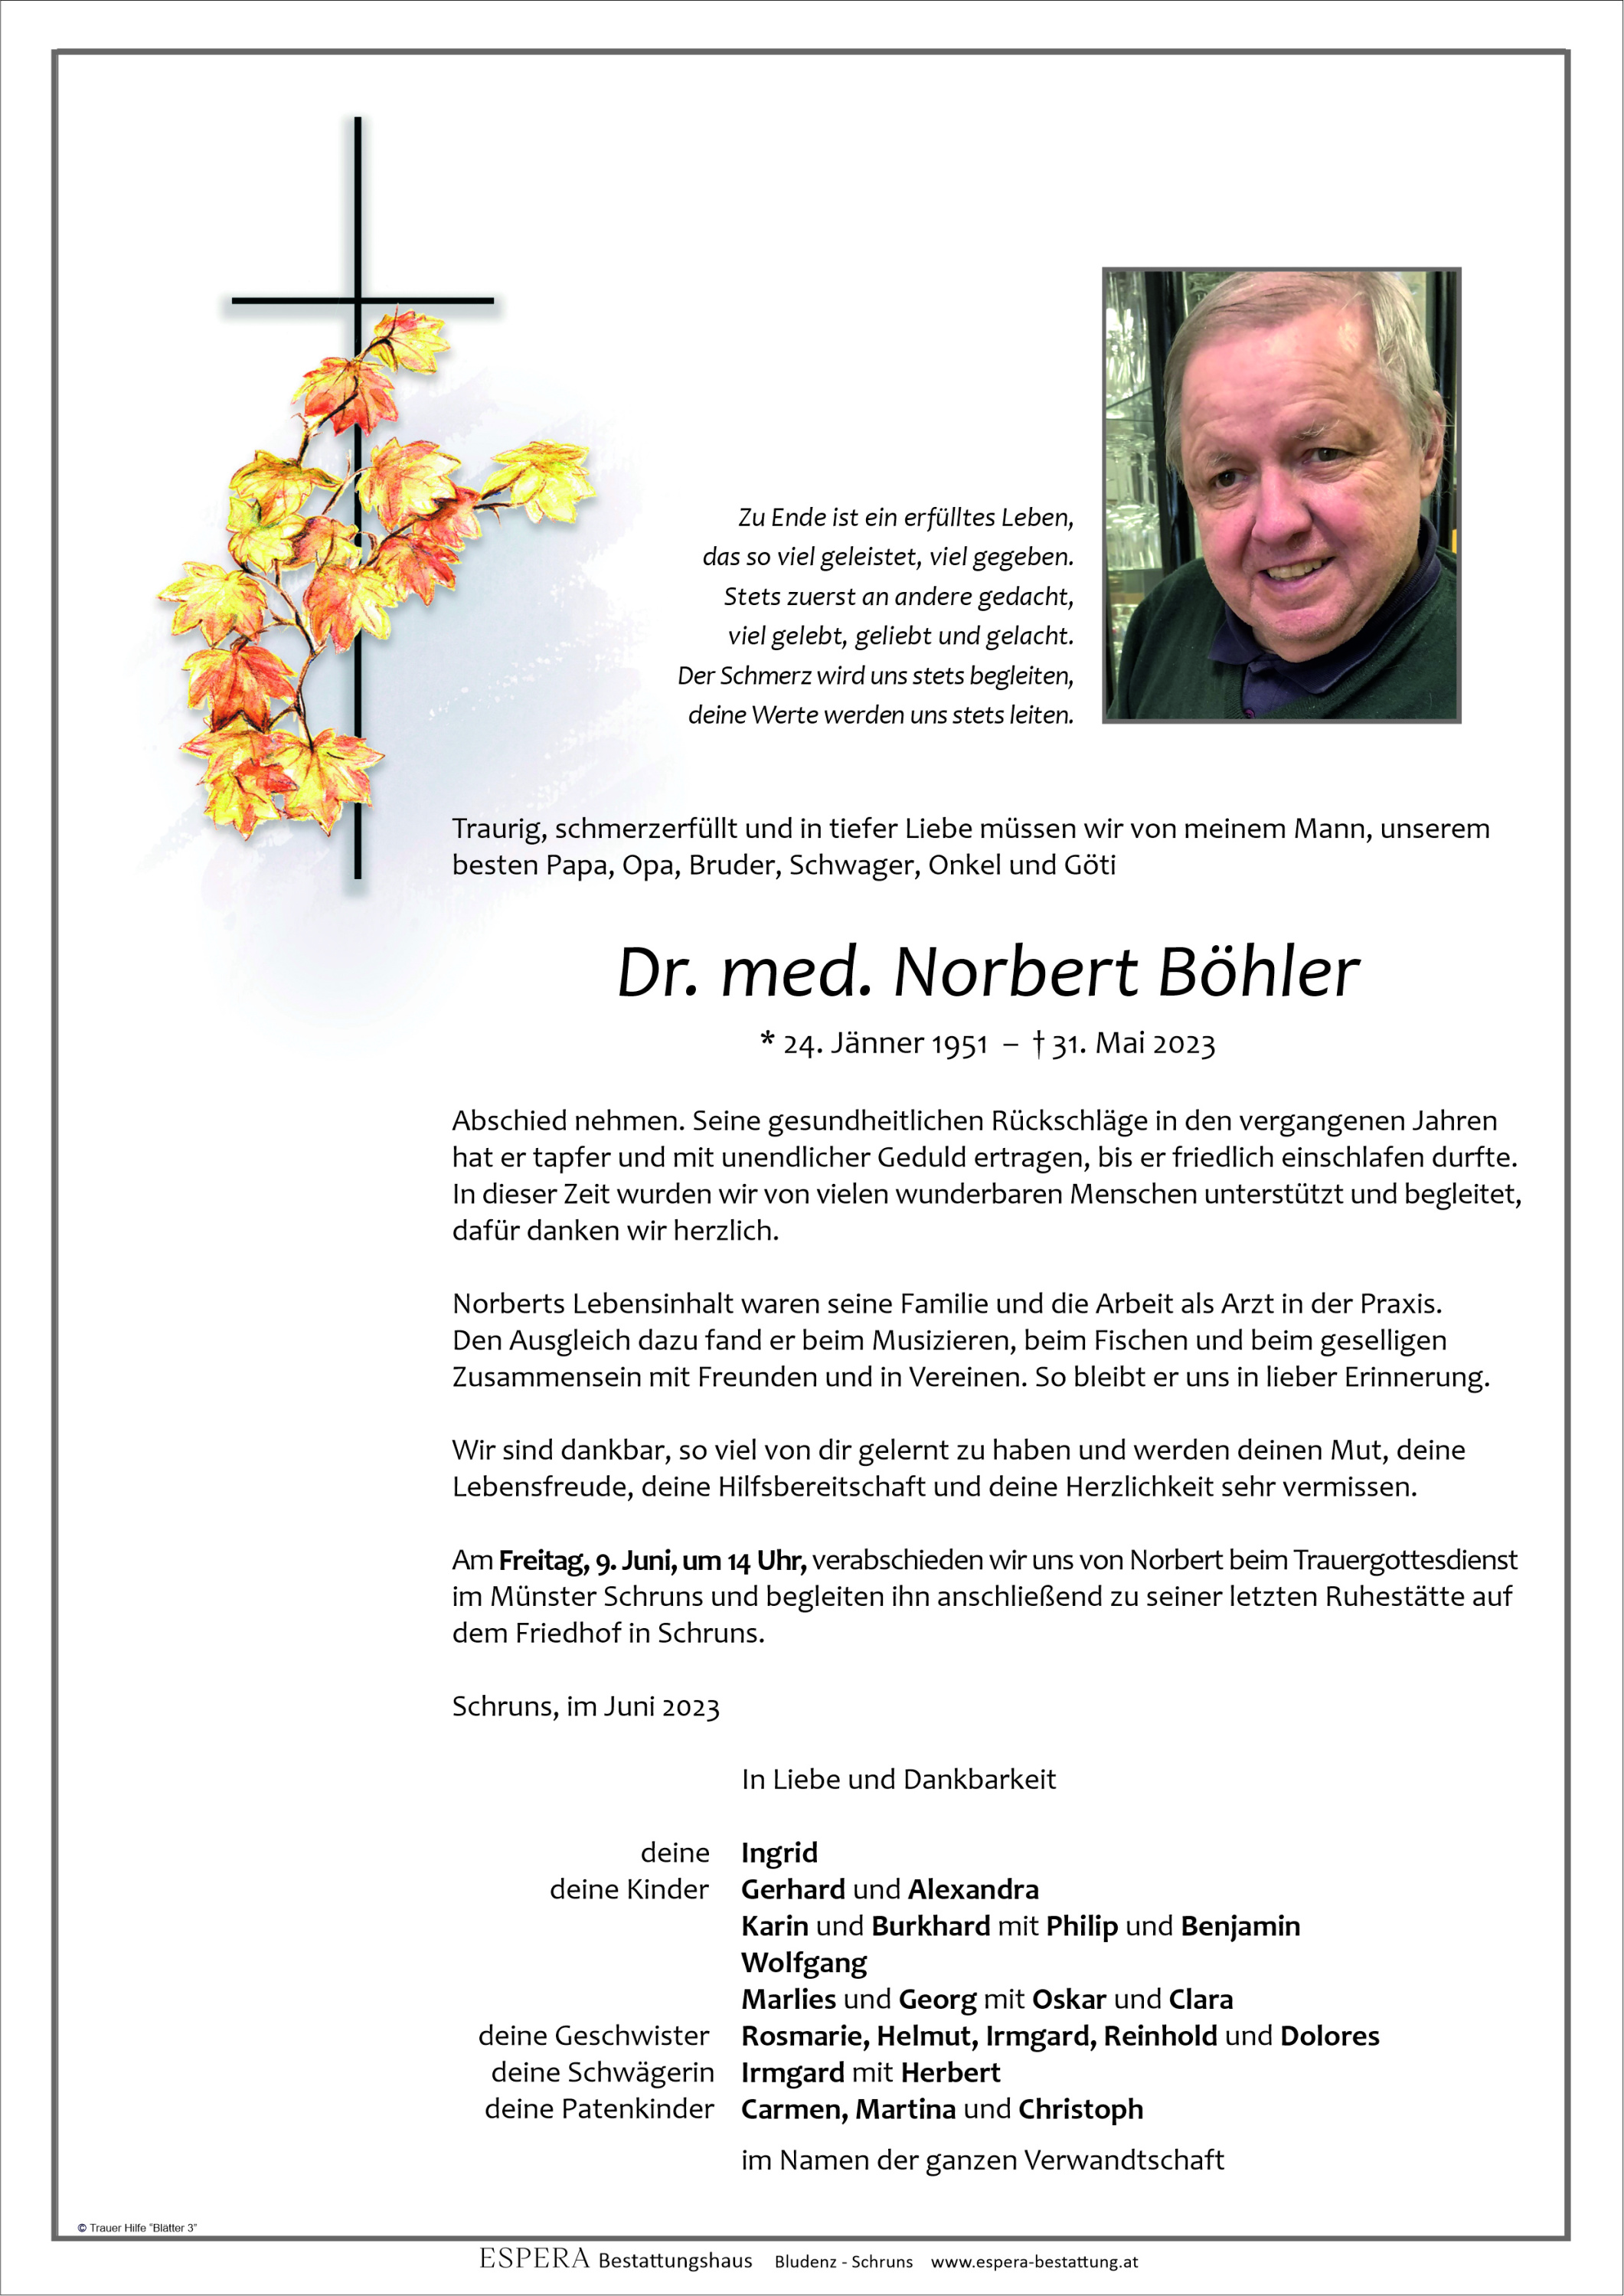 Norbert Böhler